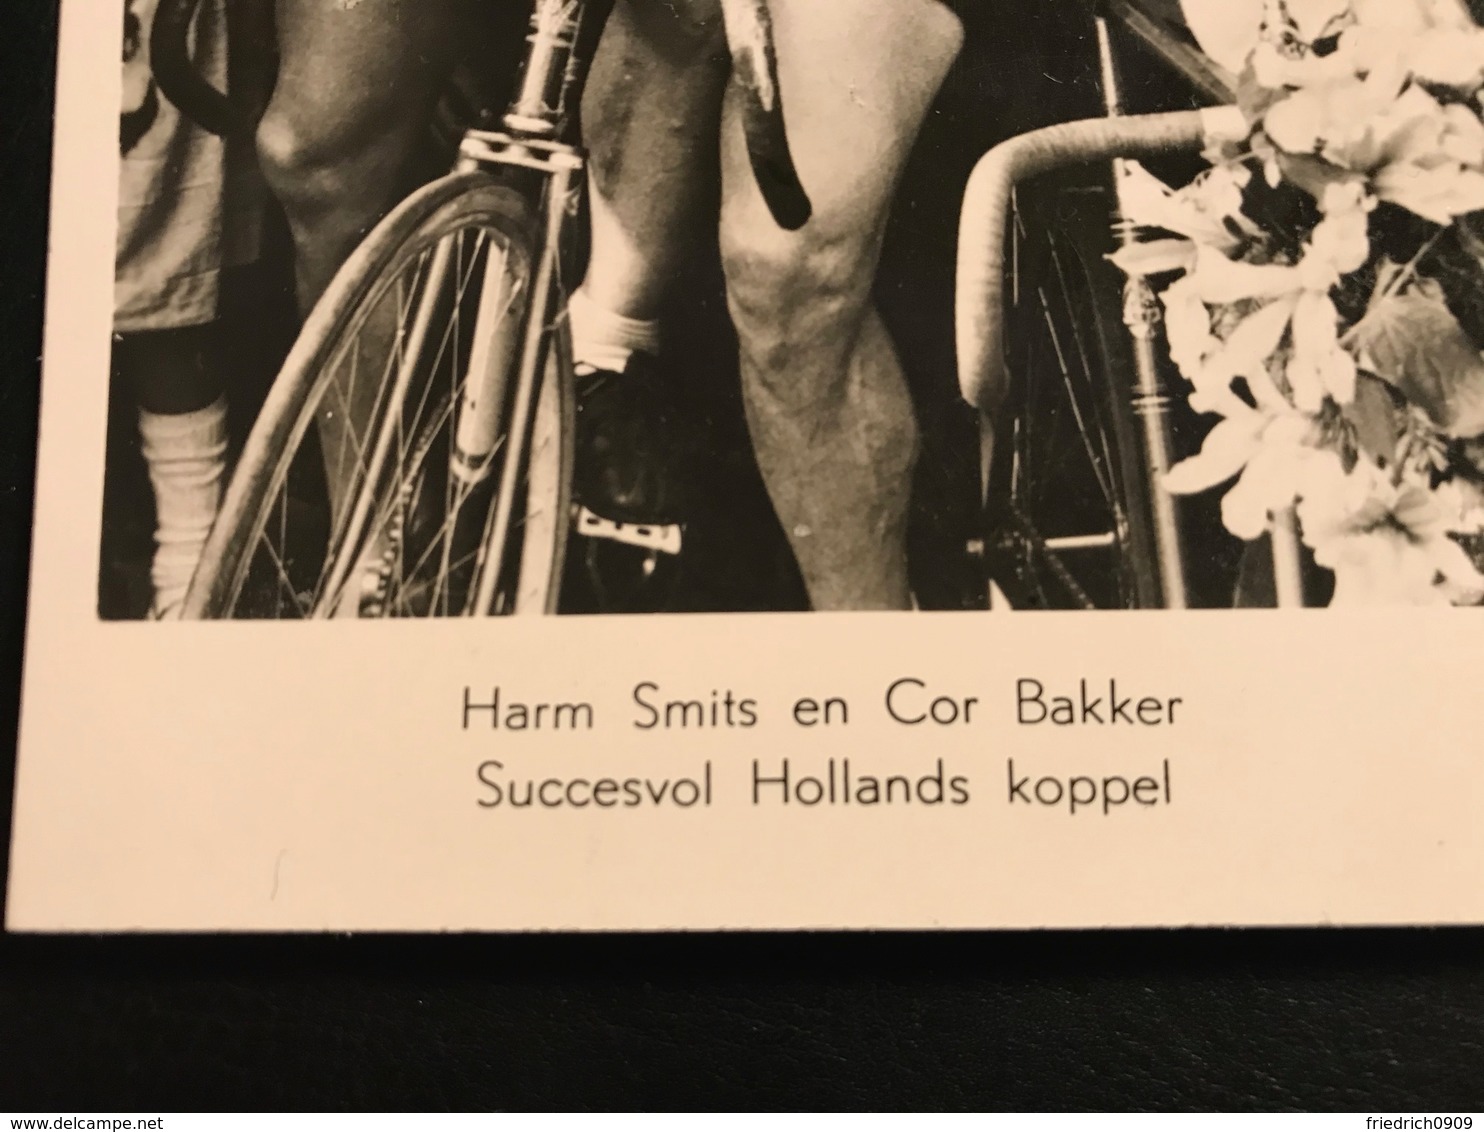 Harm Smits & Cor Bakker Niederlande Radium Reifen   Radfahrer Radrennen Radsport  Cycling Velo Wielrennen - Wielrennen